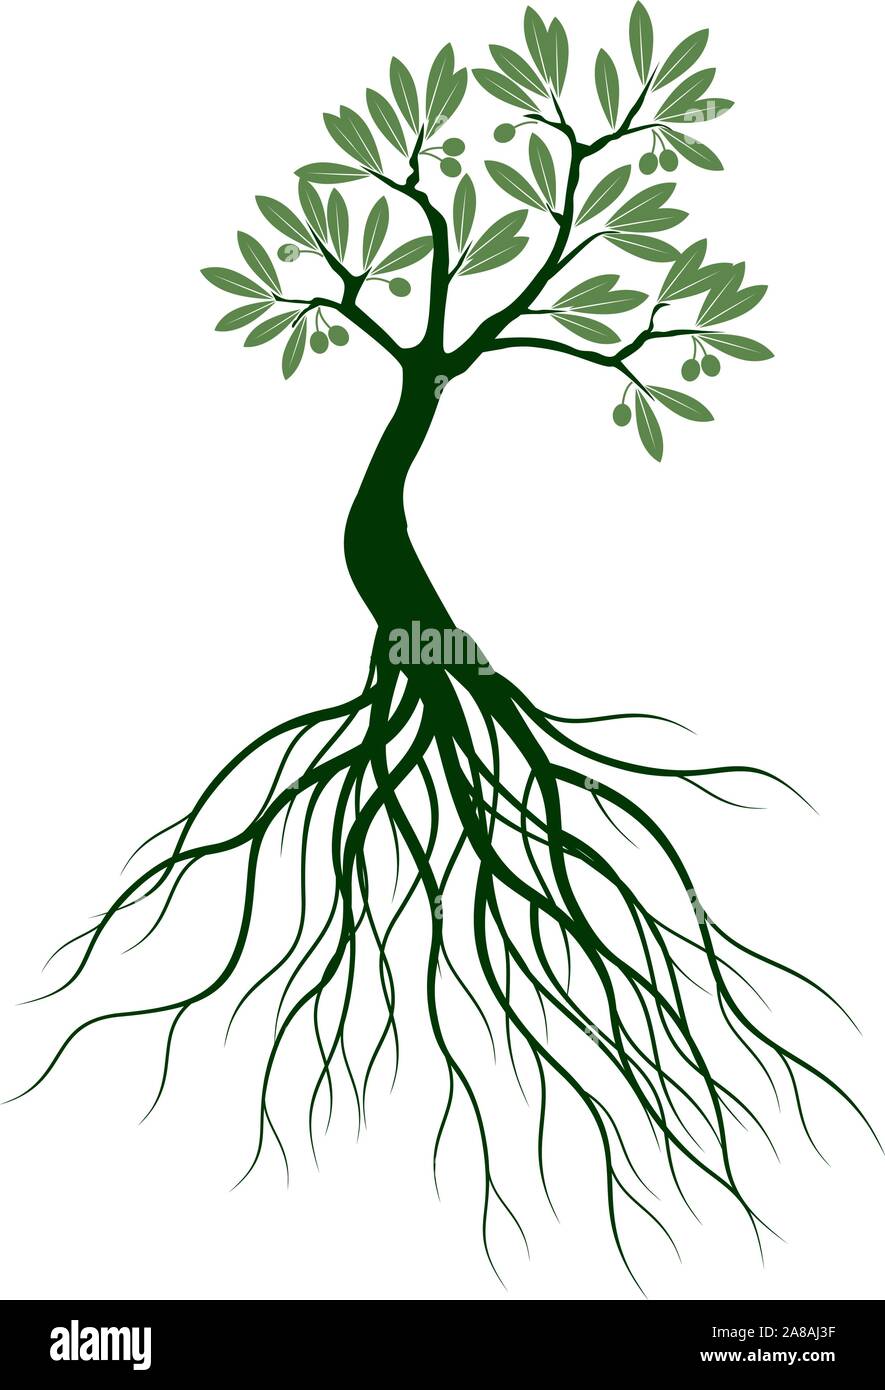 Grün Isoliert Olivenbaum auf weißem Hintergrund. Vector Illustration und concept Piktogramm. Pflanze im Garten. Stock Vektor